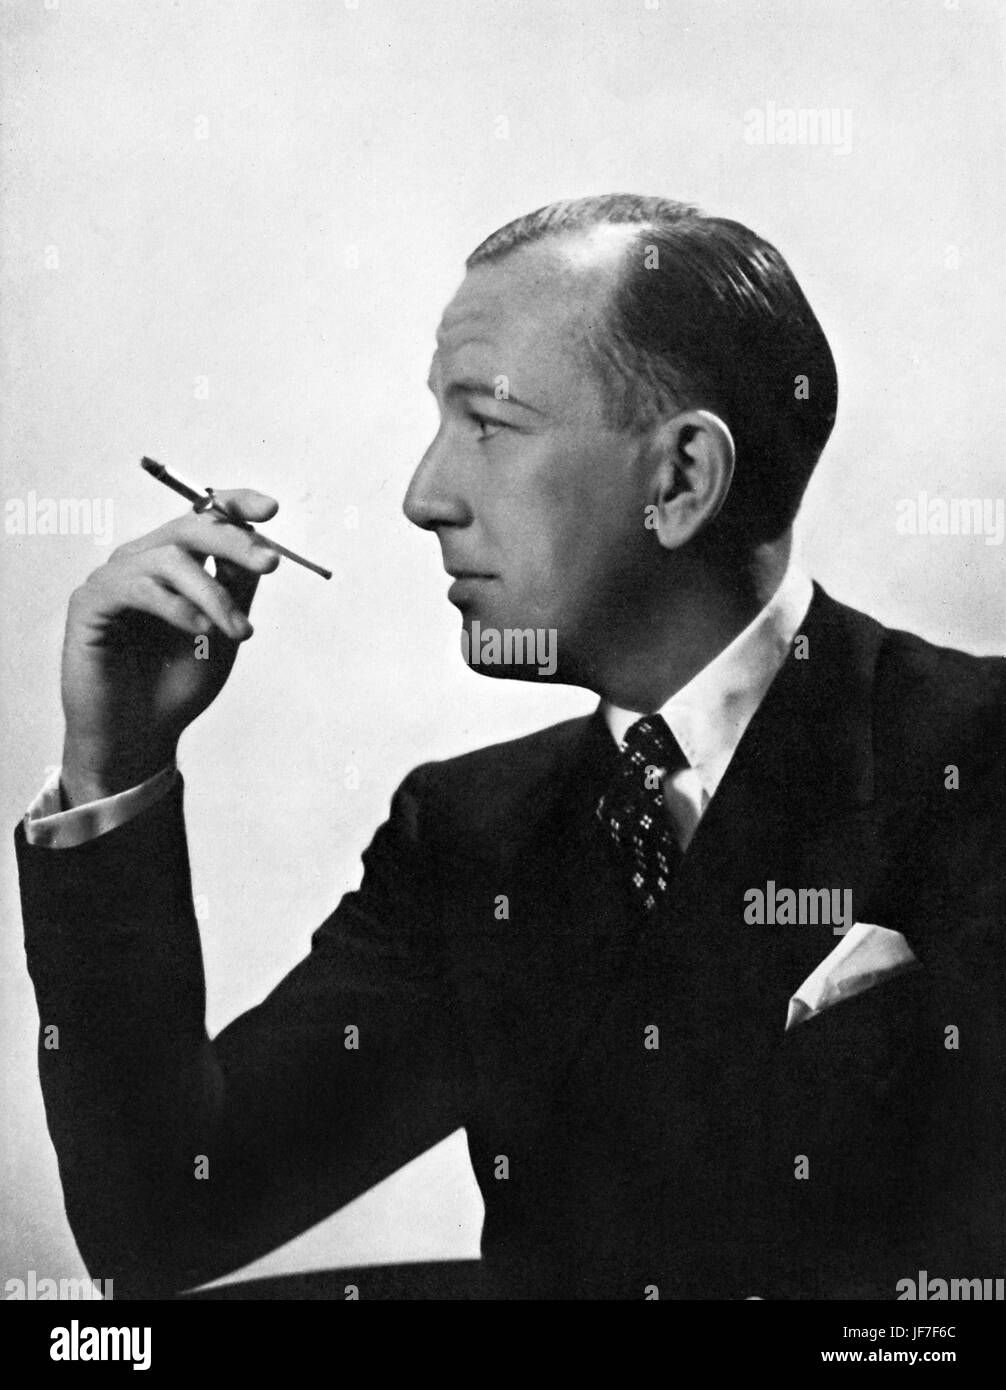 Noel Coward fumeurs profil avec un porte-cigarette, vers 1936. Acteur, dramaturge et compositeur : 16 décembre 1899 - 26 mars 1973. Banque D'Images